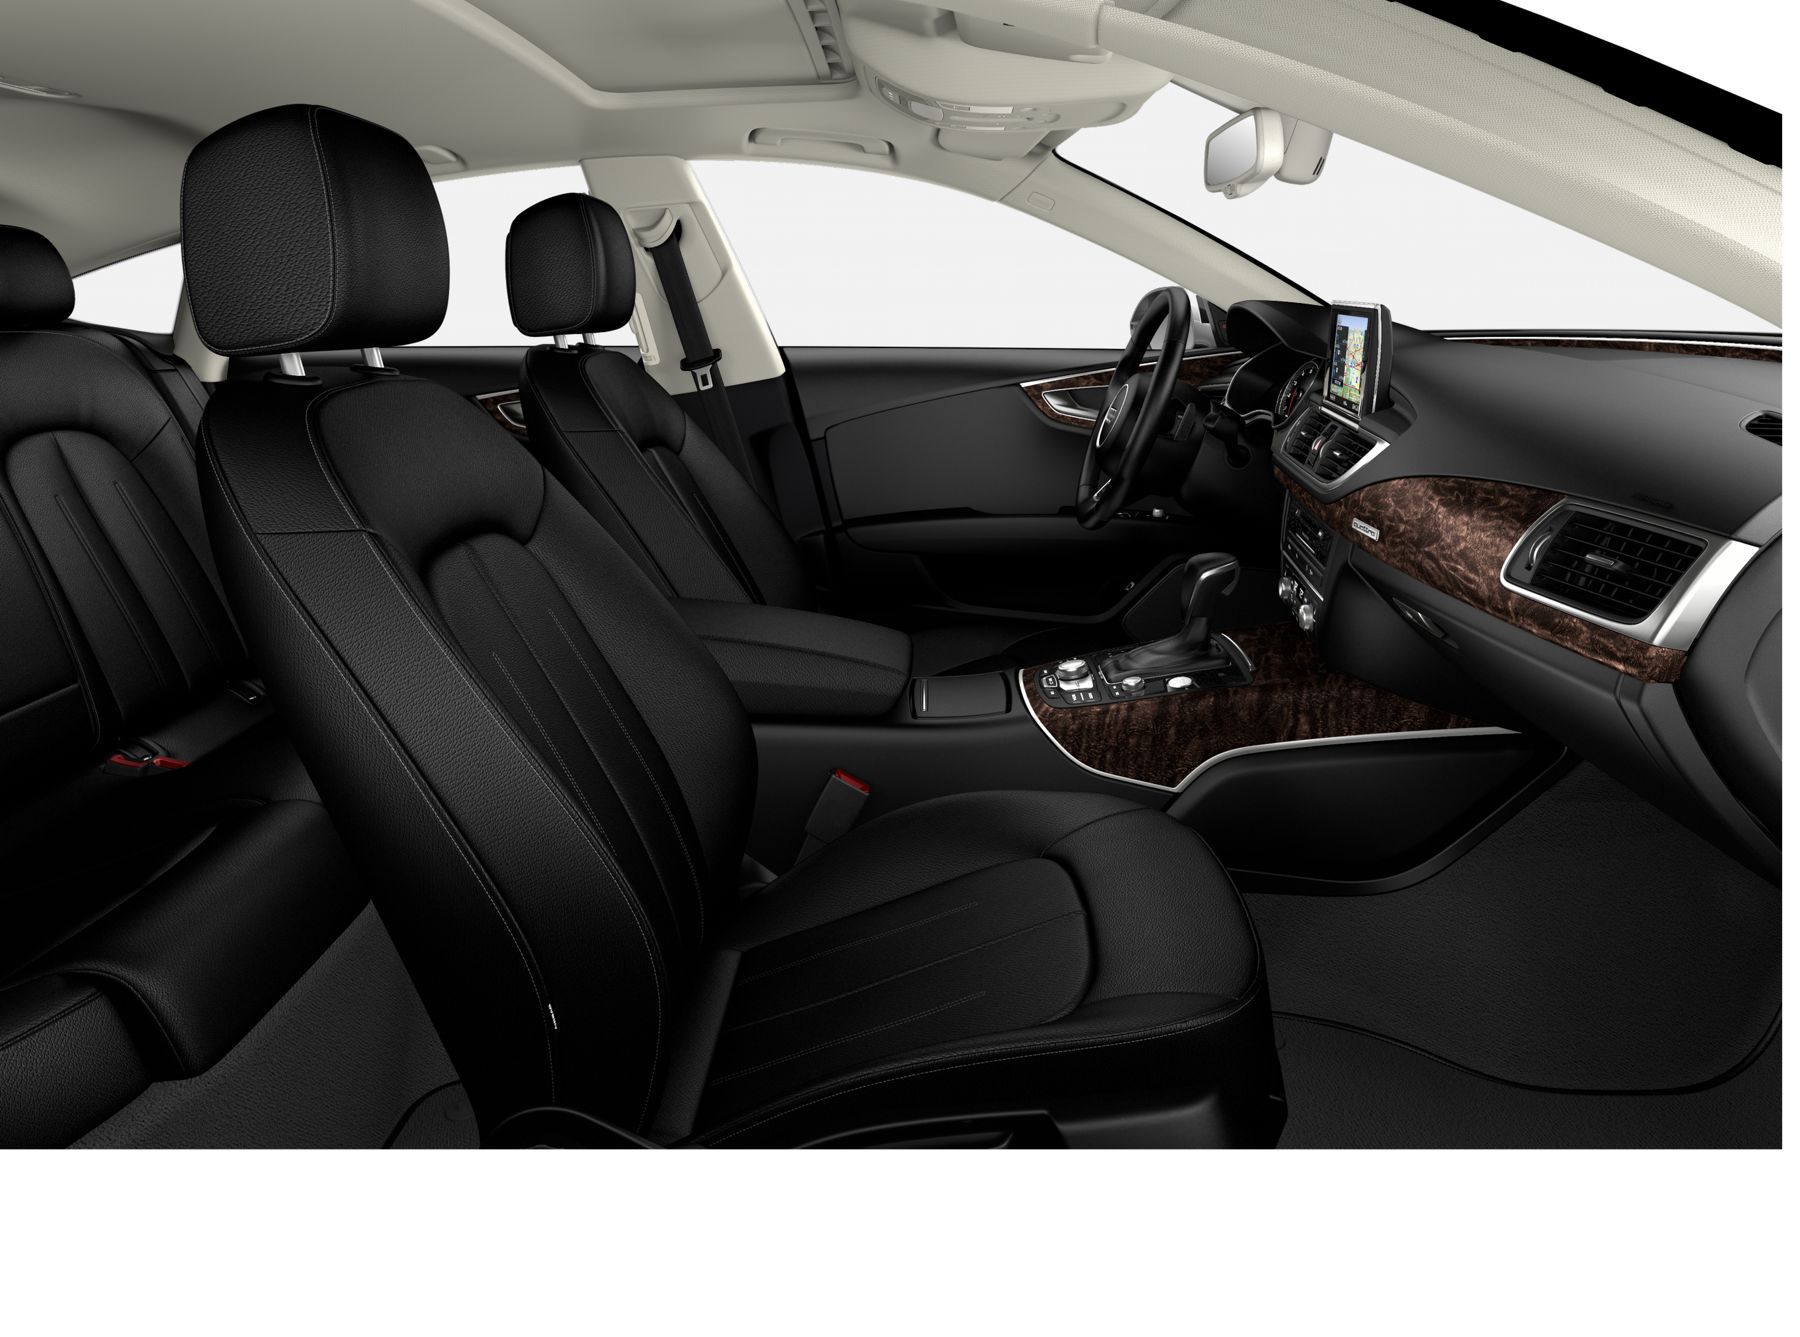 Audi A7 Premium Plus interior front cross view